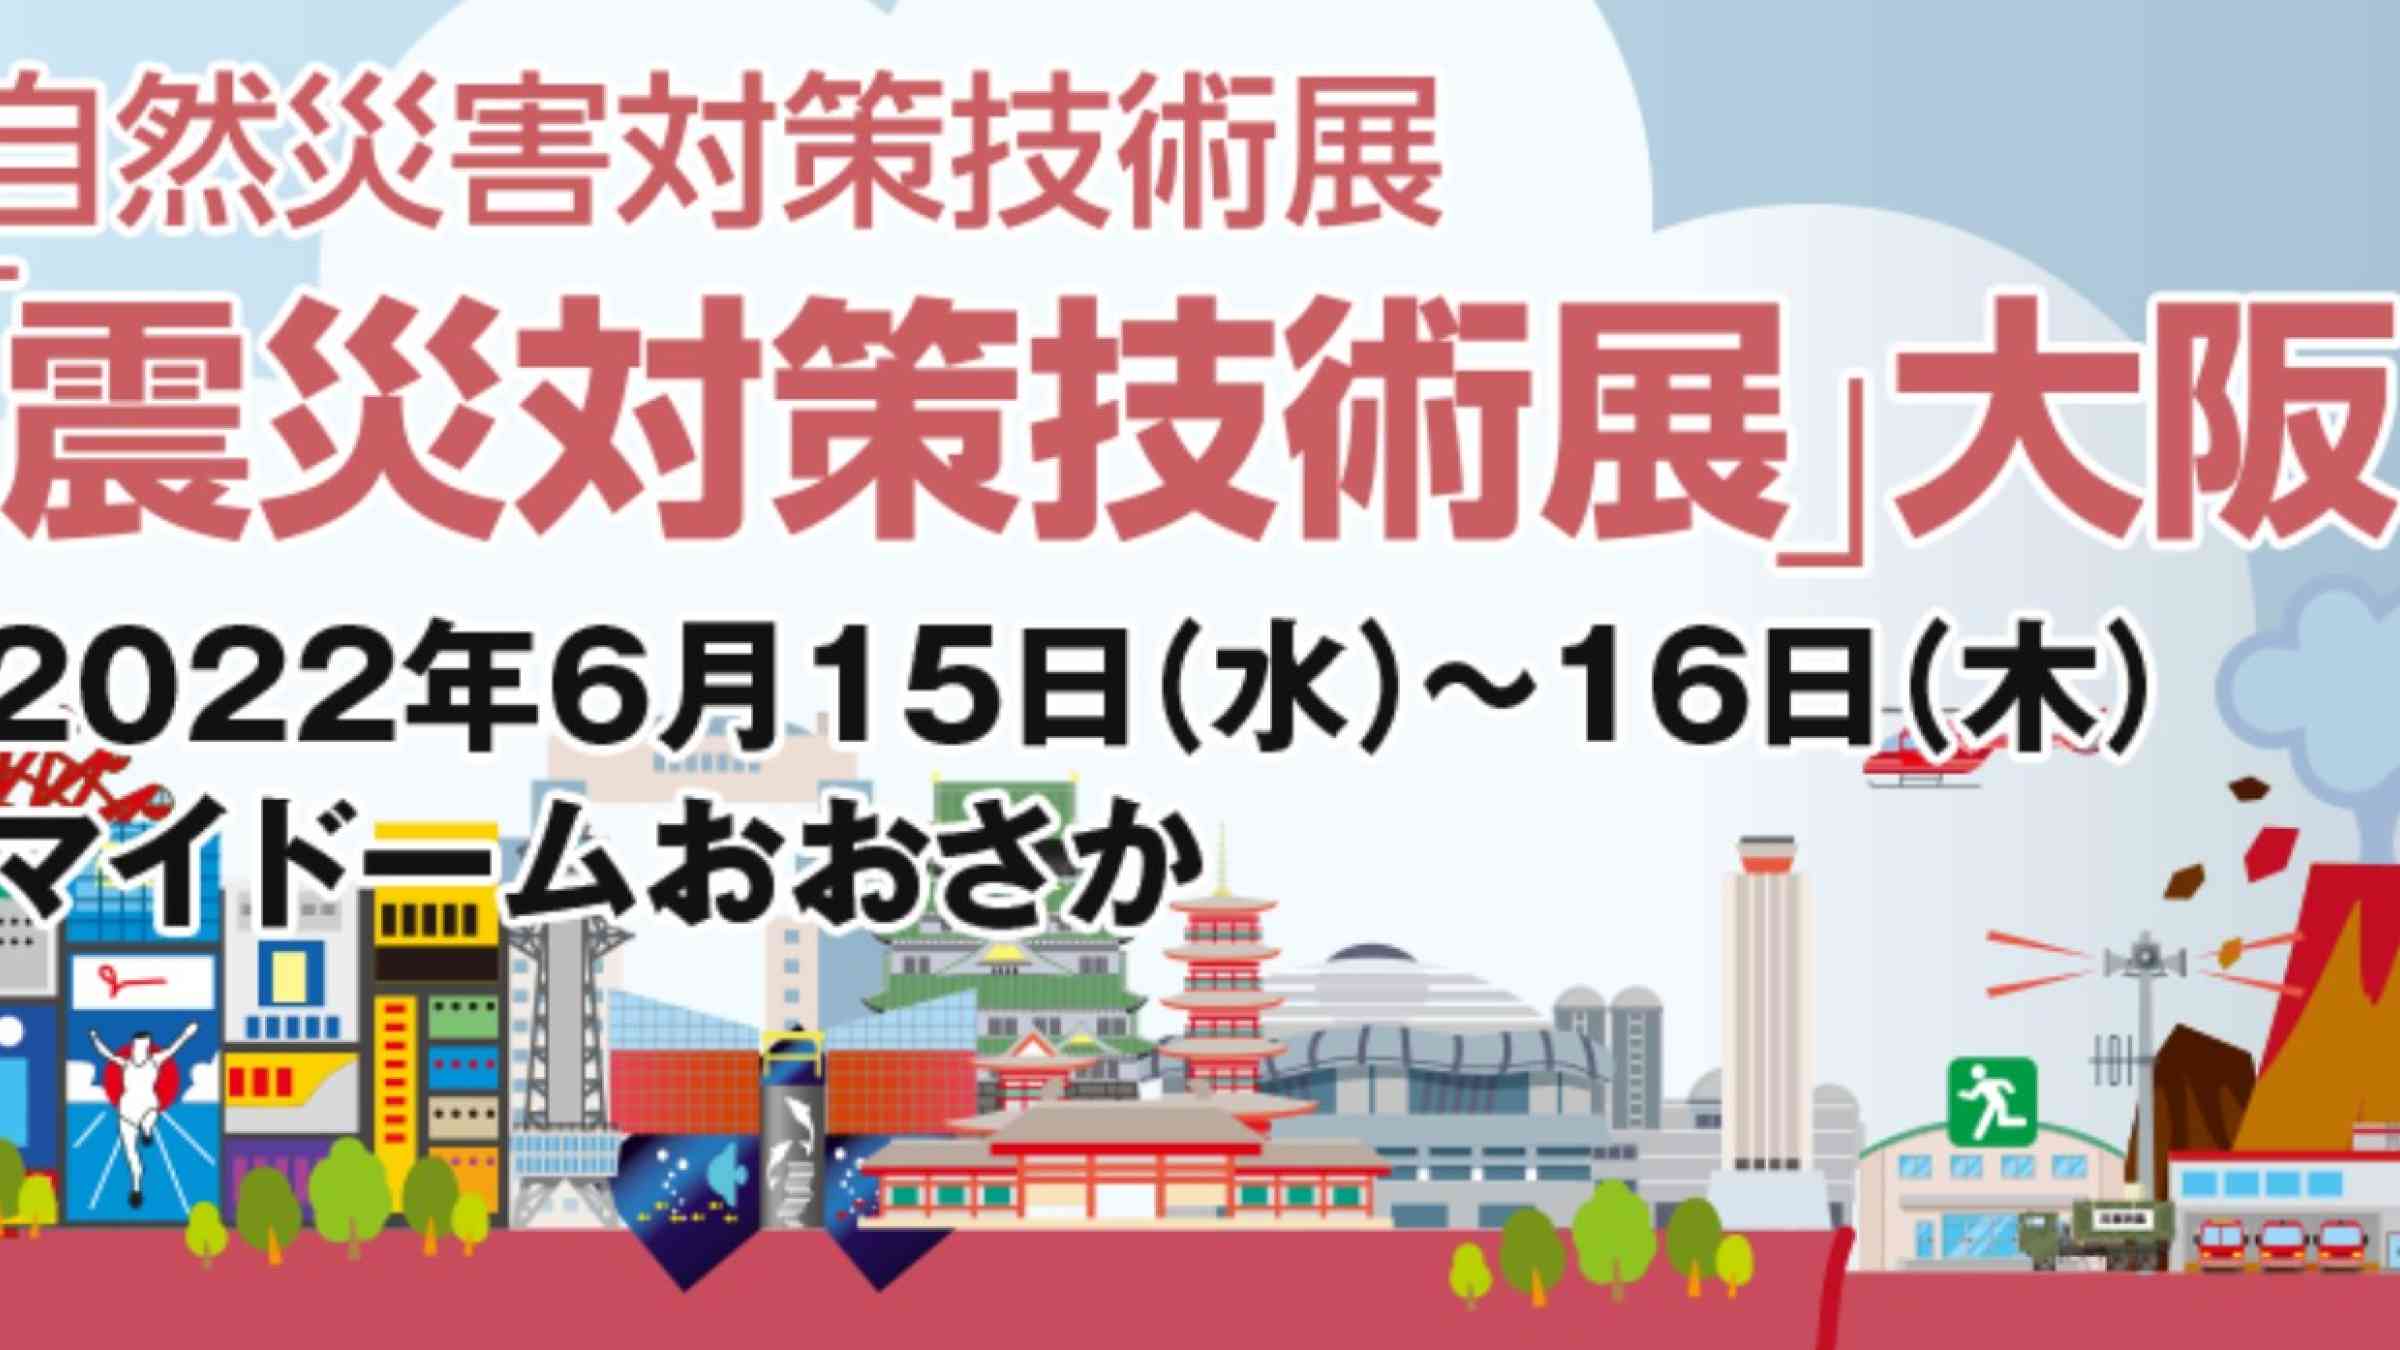 Earthquake Countermeasures Technology Exhibition Osaka 2022